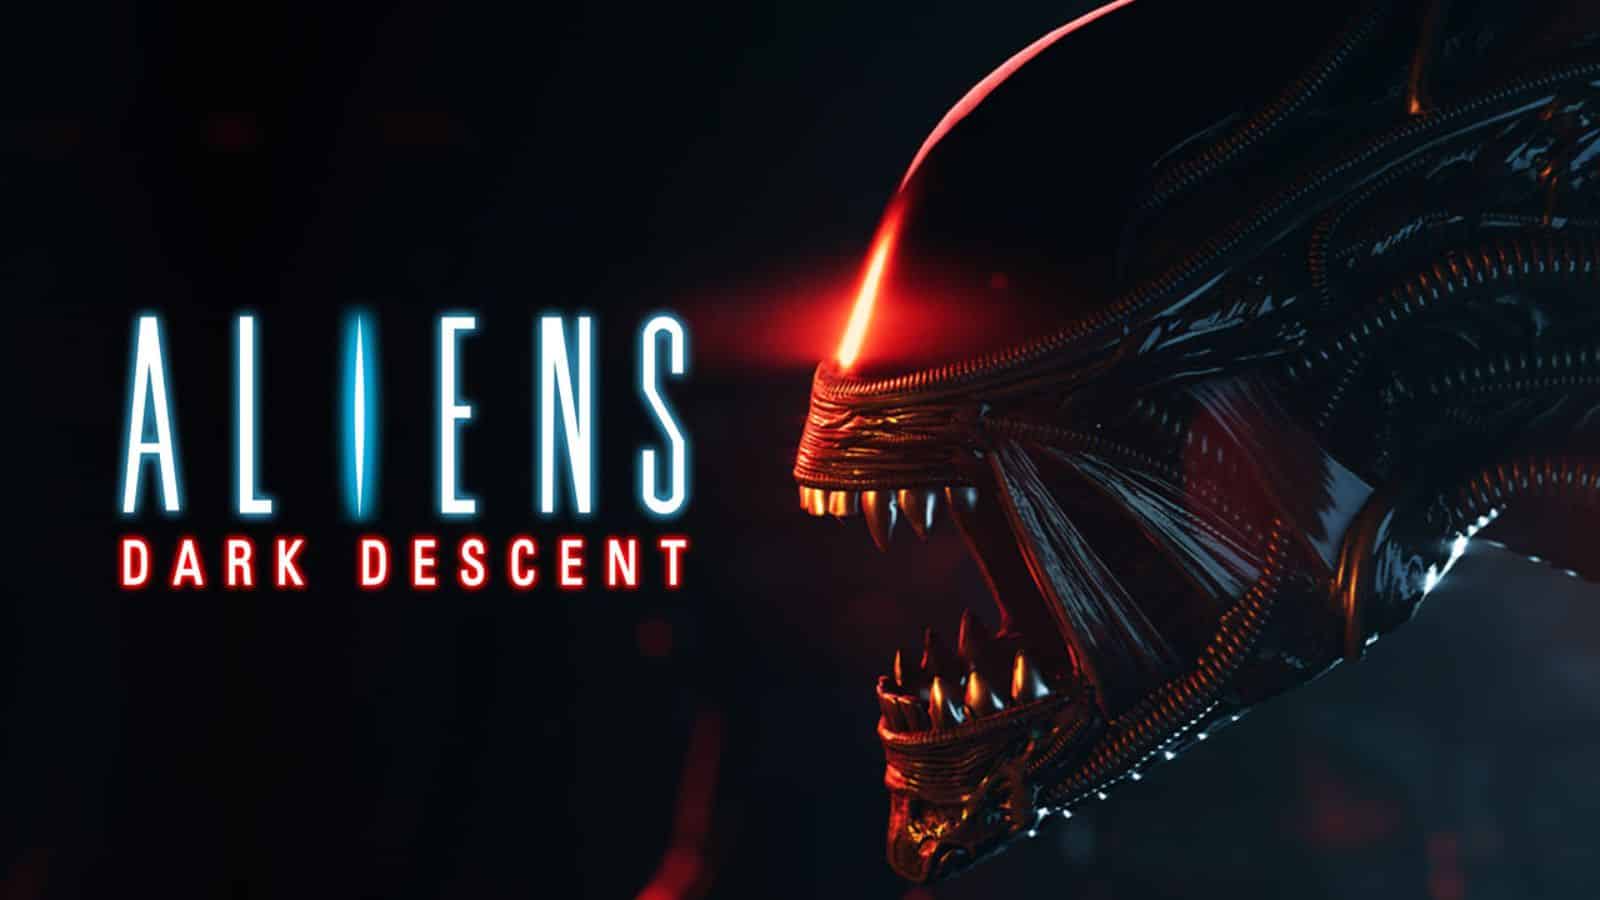 aliens dark descent release